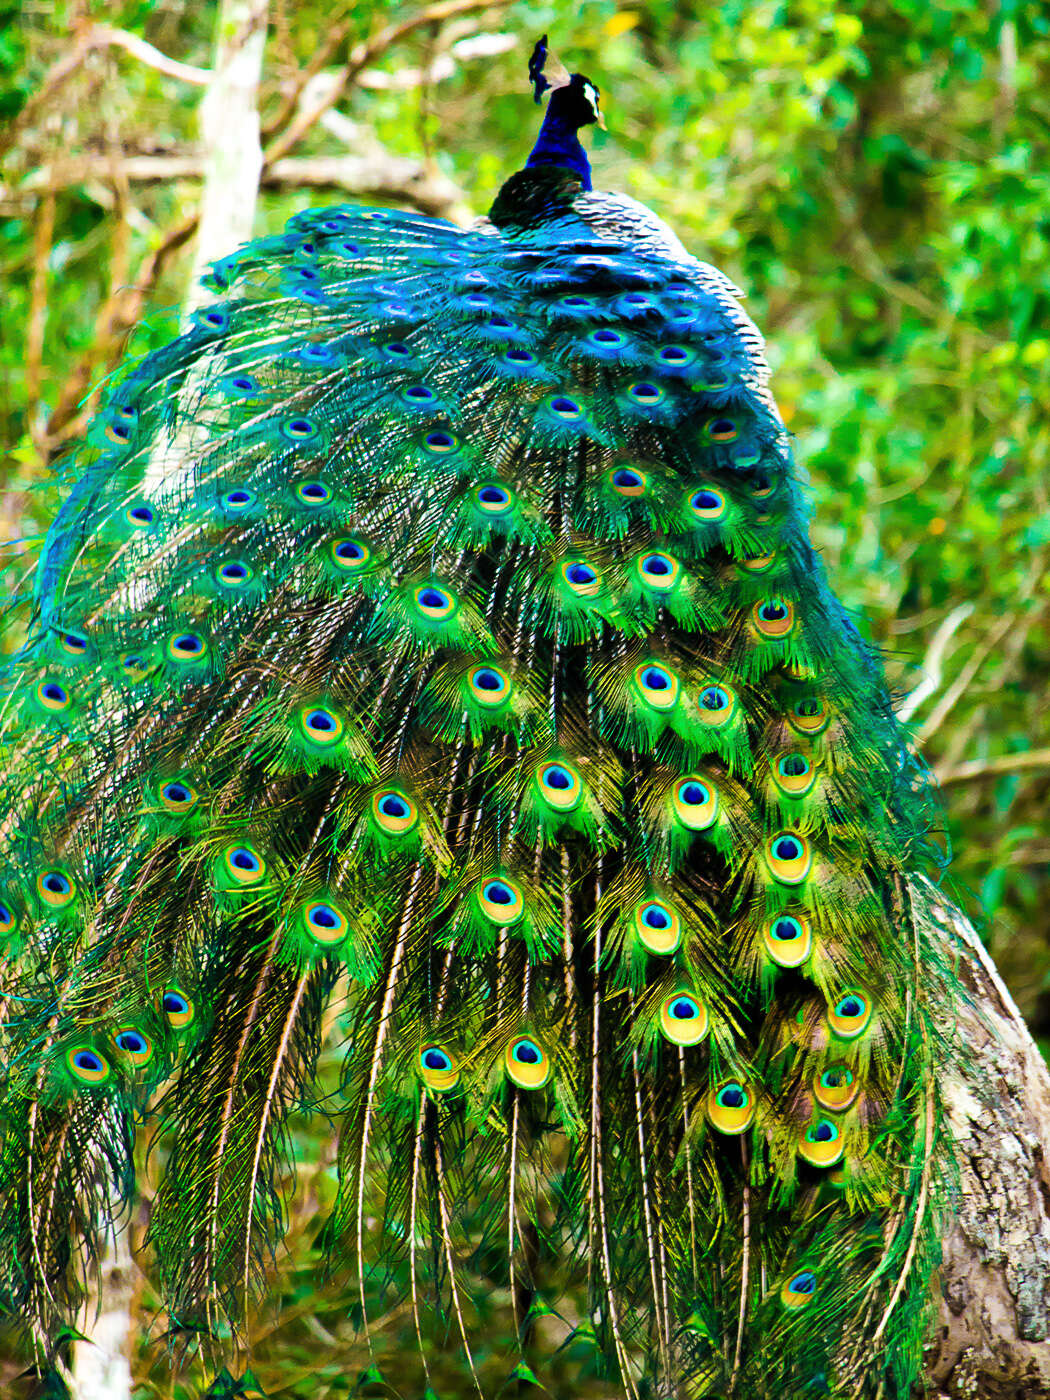 Image of Asiatic peafowl